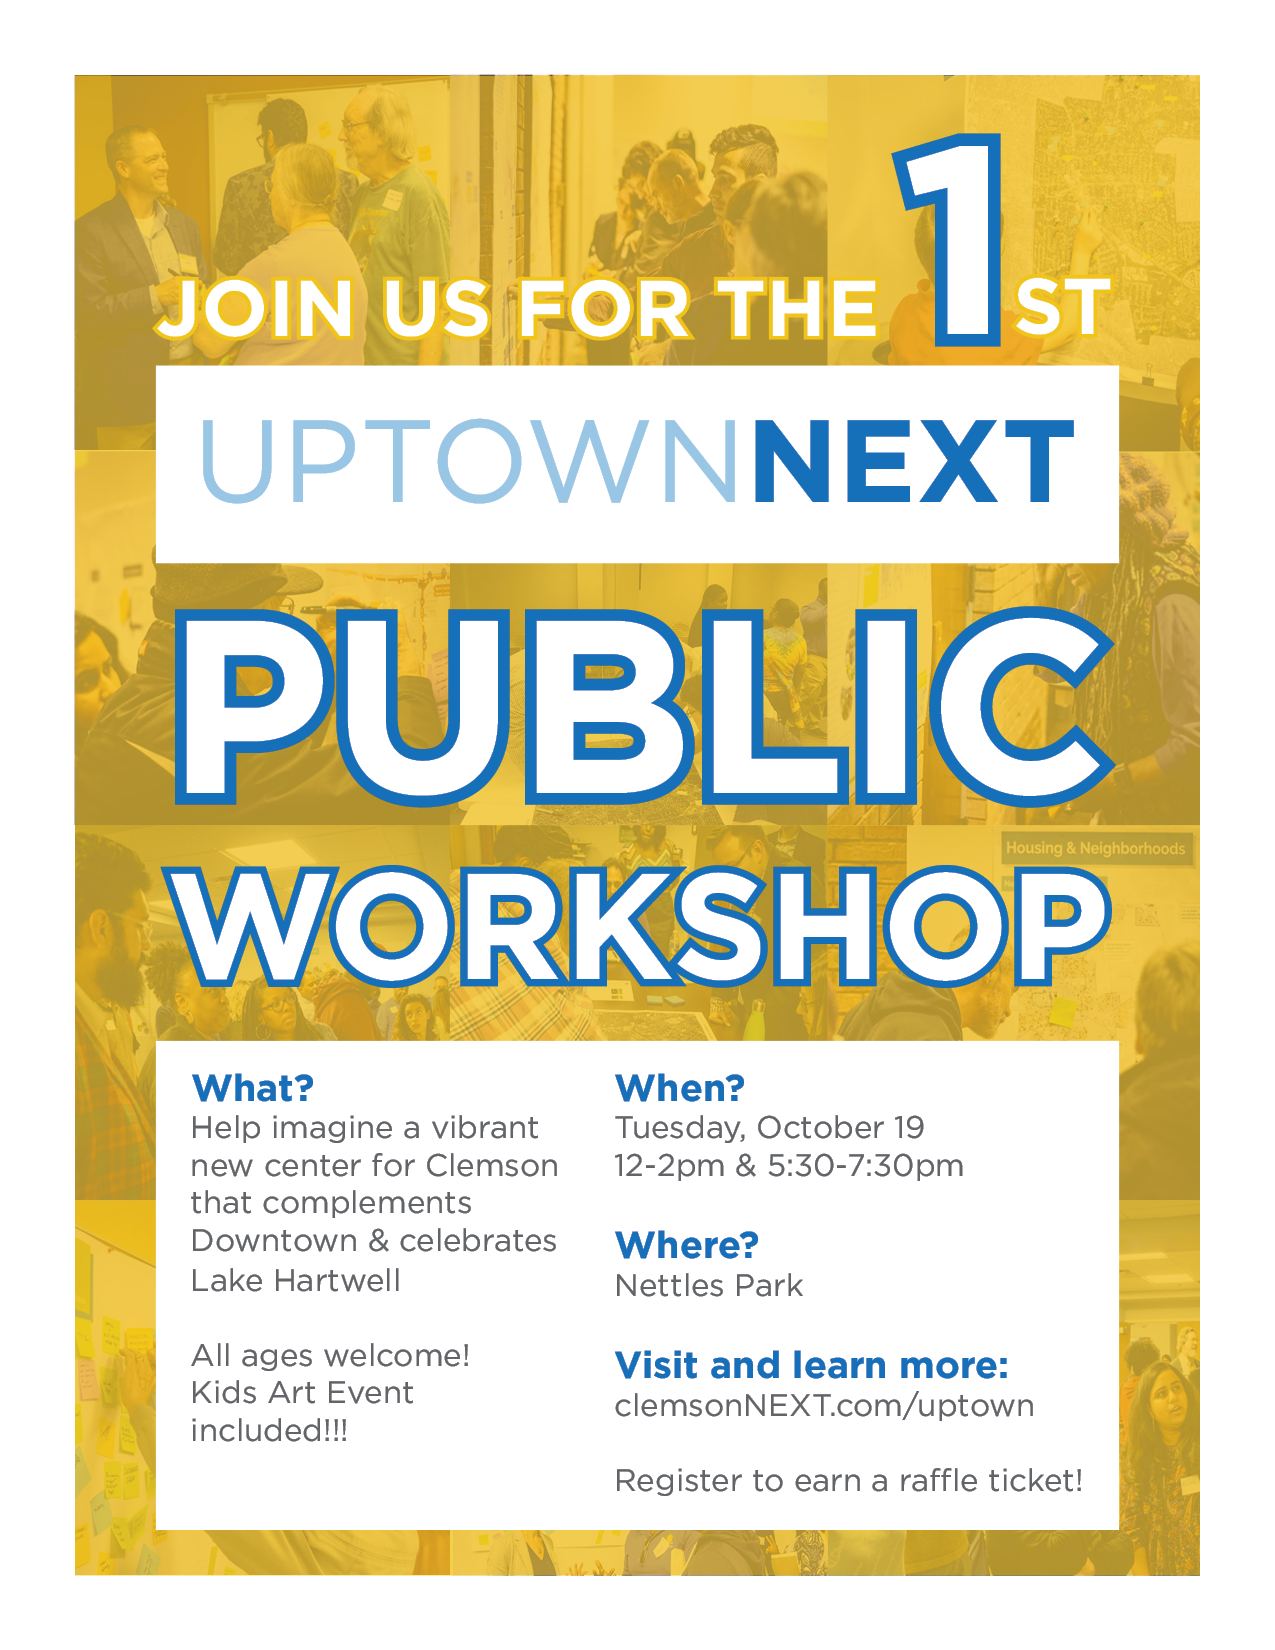 uptown next public workshop #1